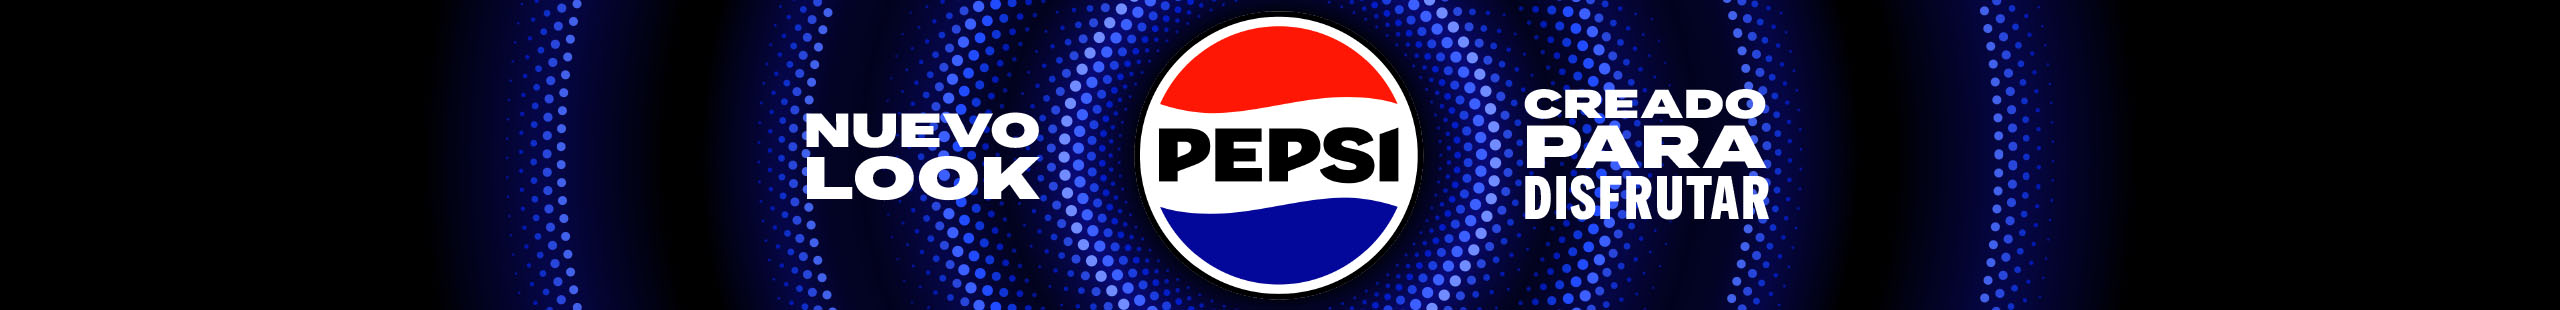 Pepsico Nuevo Logo creado para disfrutar